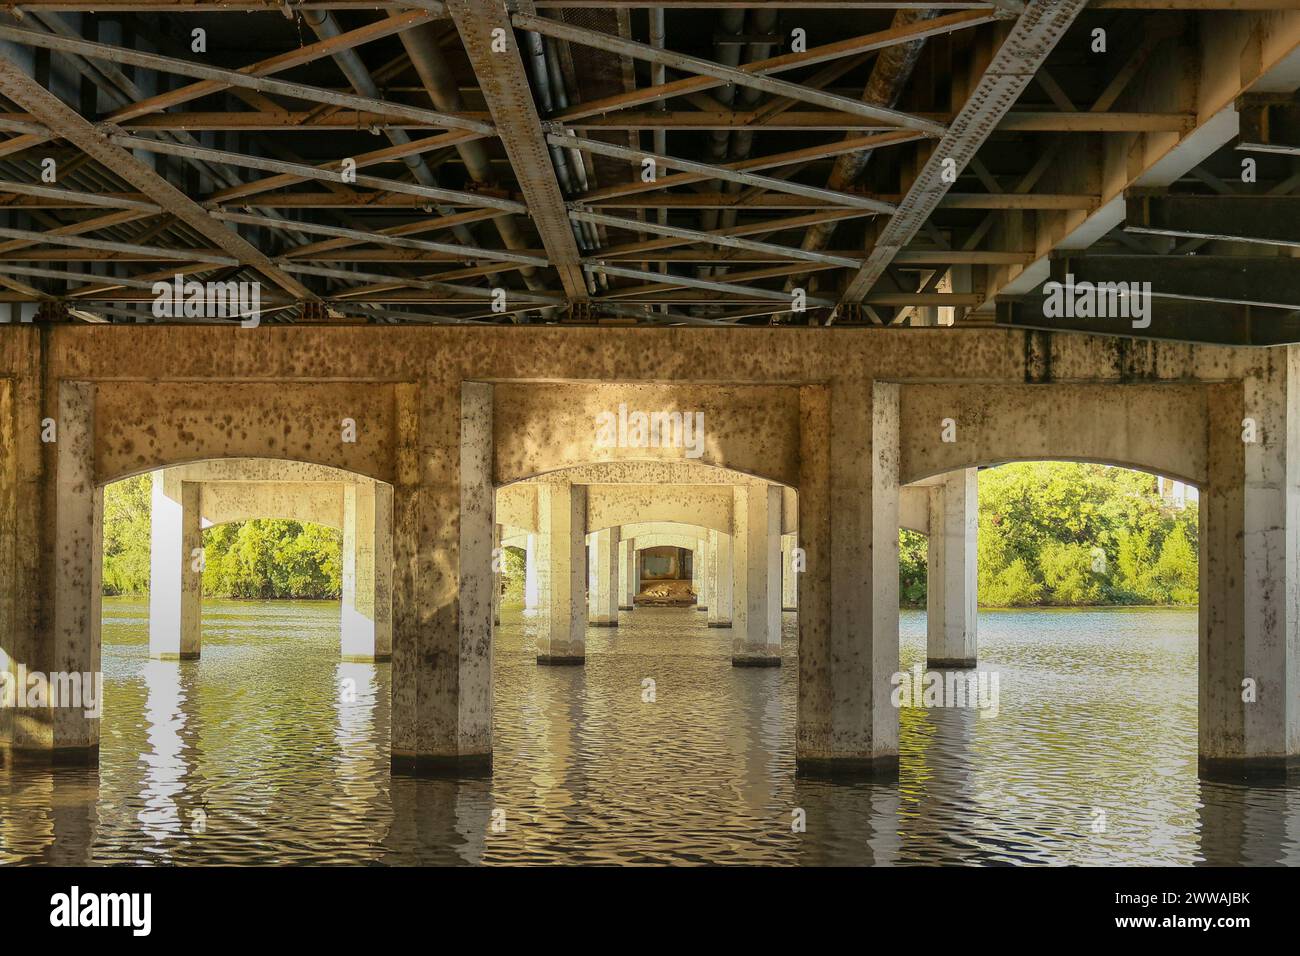 Sotto il 1st Street Bridge di Austin, Texas, l'aspra bellezza del design industriale incontra la serenità naturale del fiume Colorado. Il suppo Foto Stock